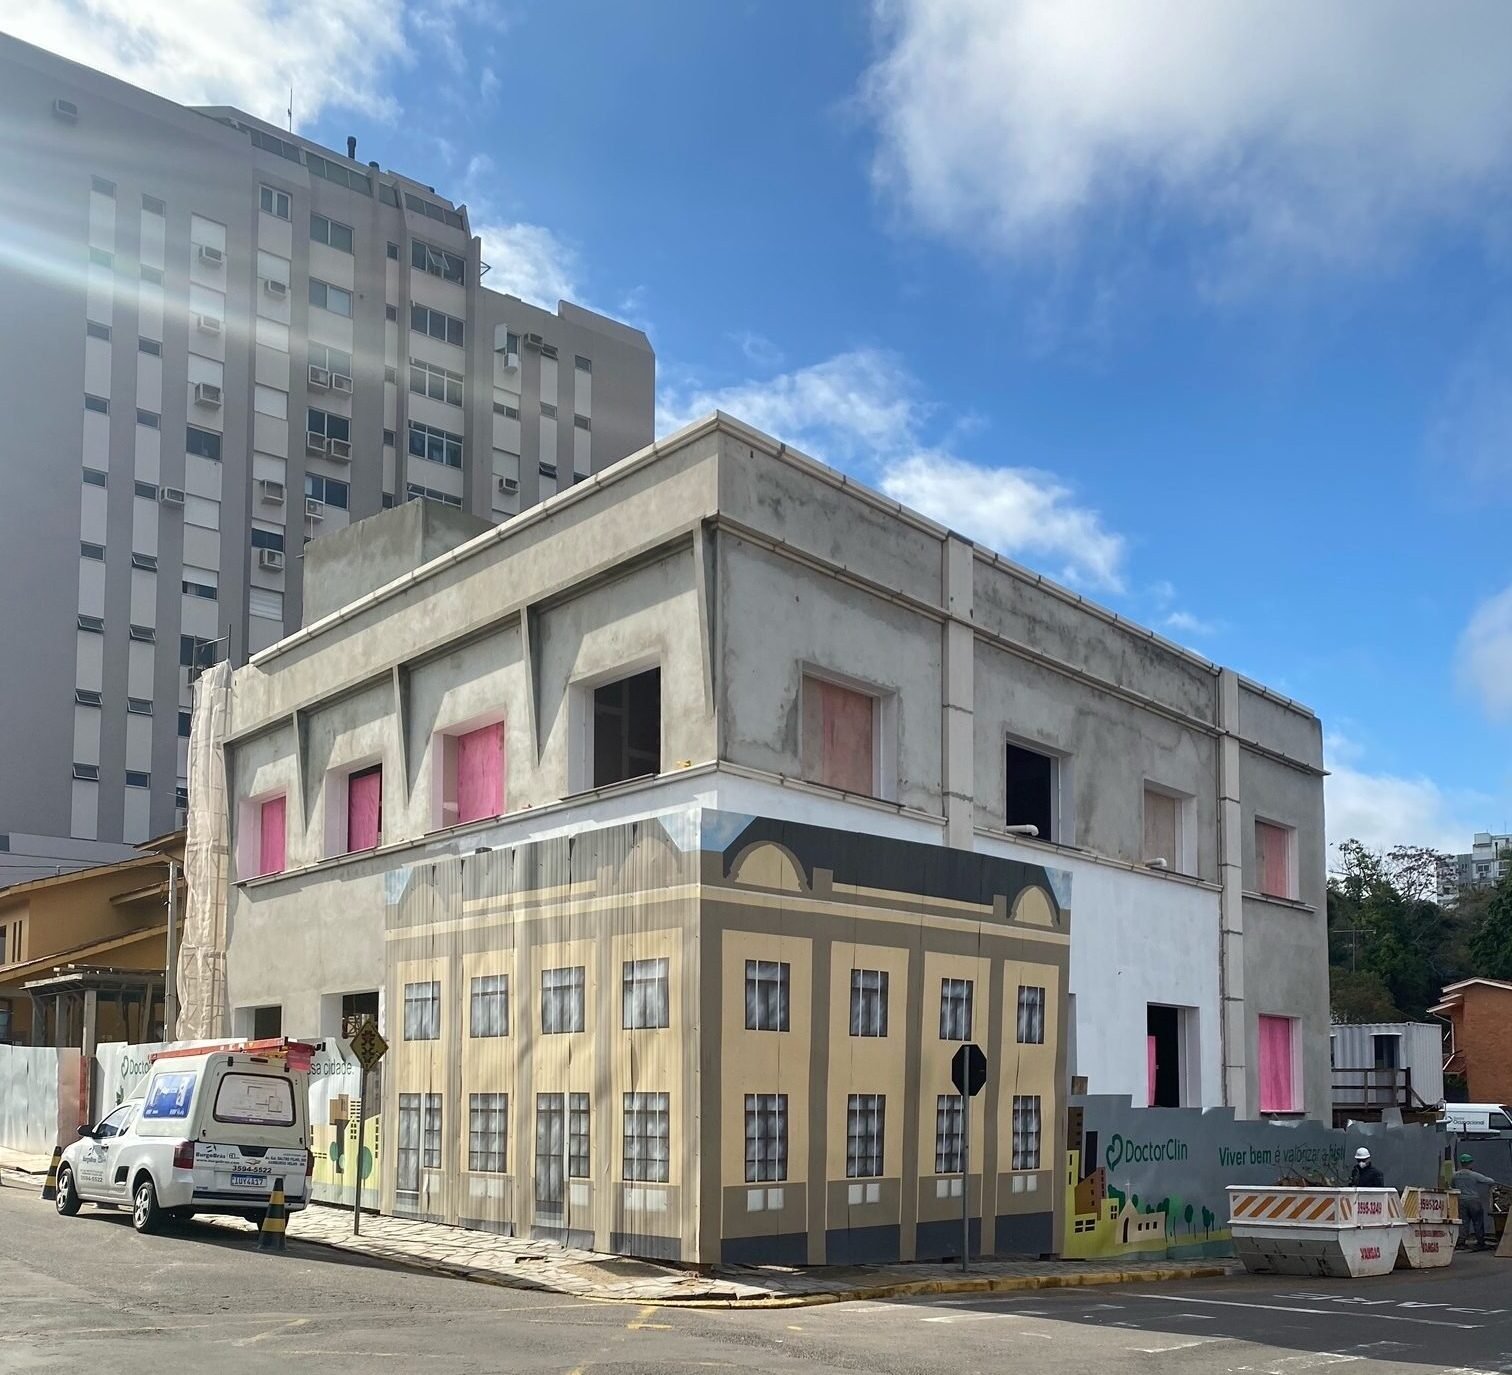 Doctor Clin projeta para novembro a entrega da restauração e inauguração do prédio em Hamburgo Velho